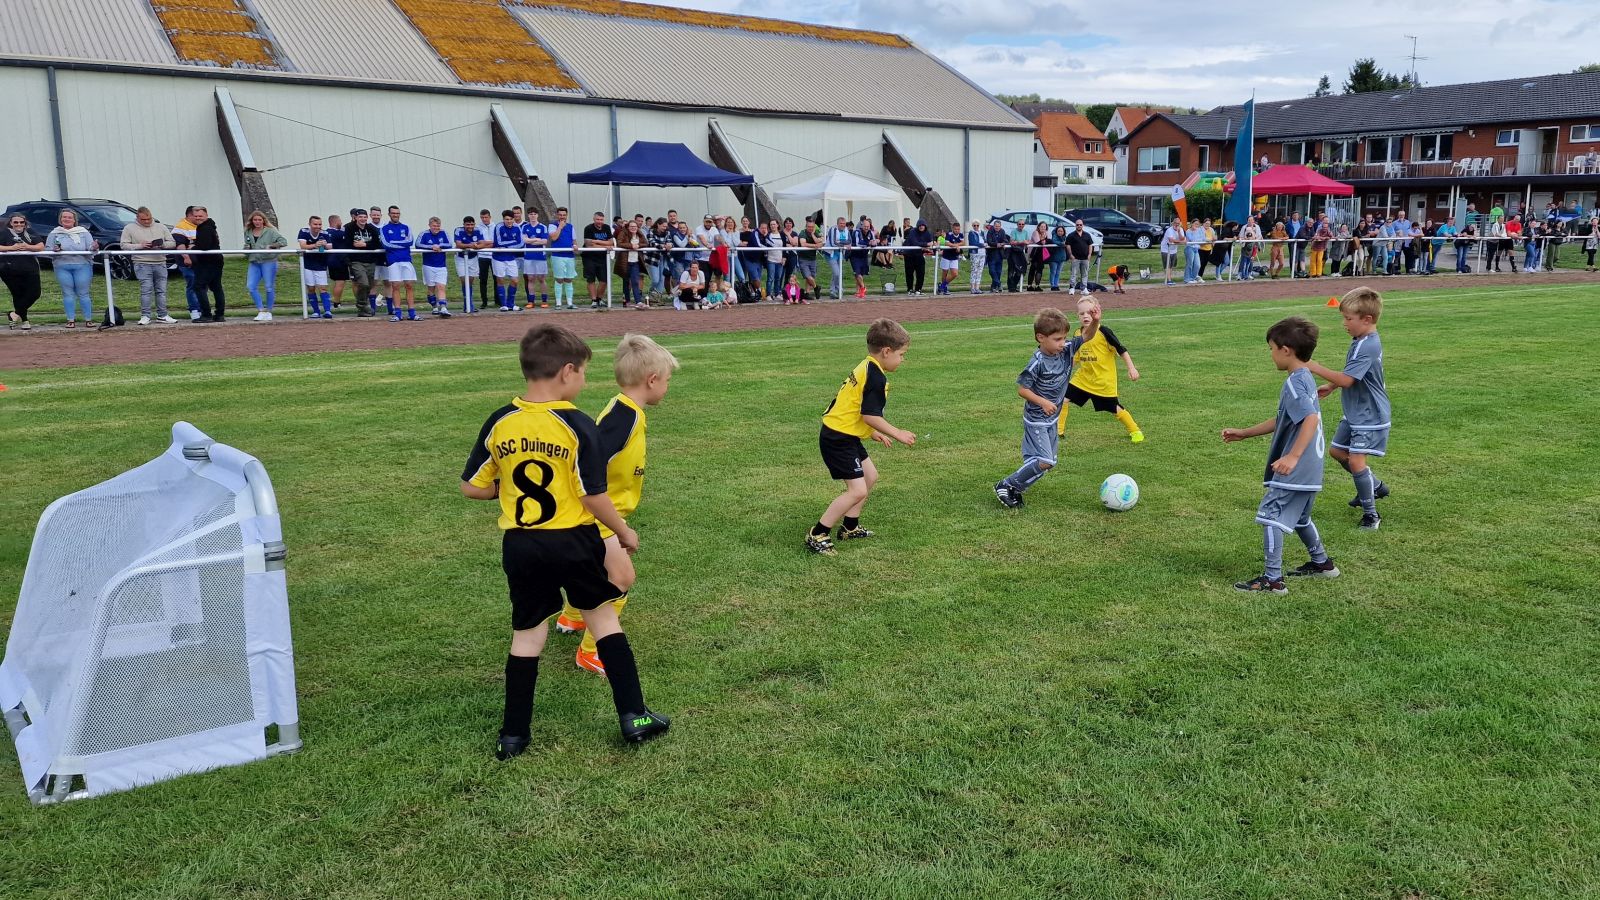 Kinderfußballfestival in Duingen: Eschershausen und Hils sind dabei